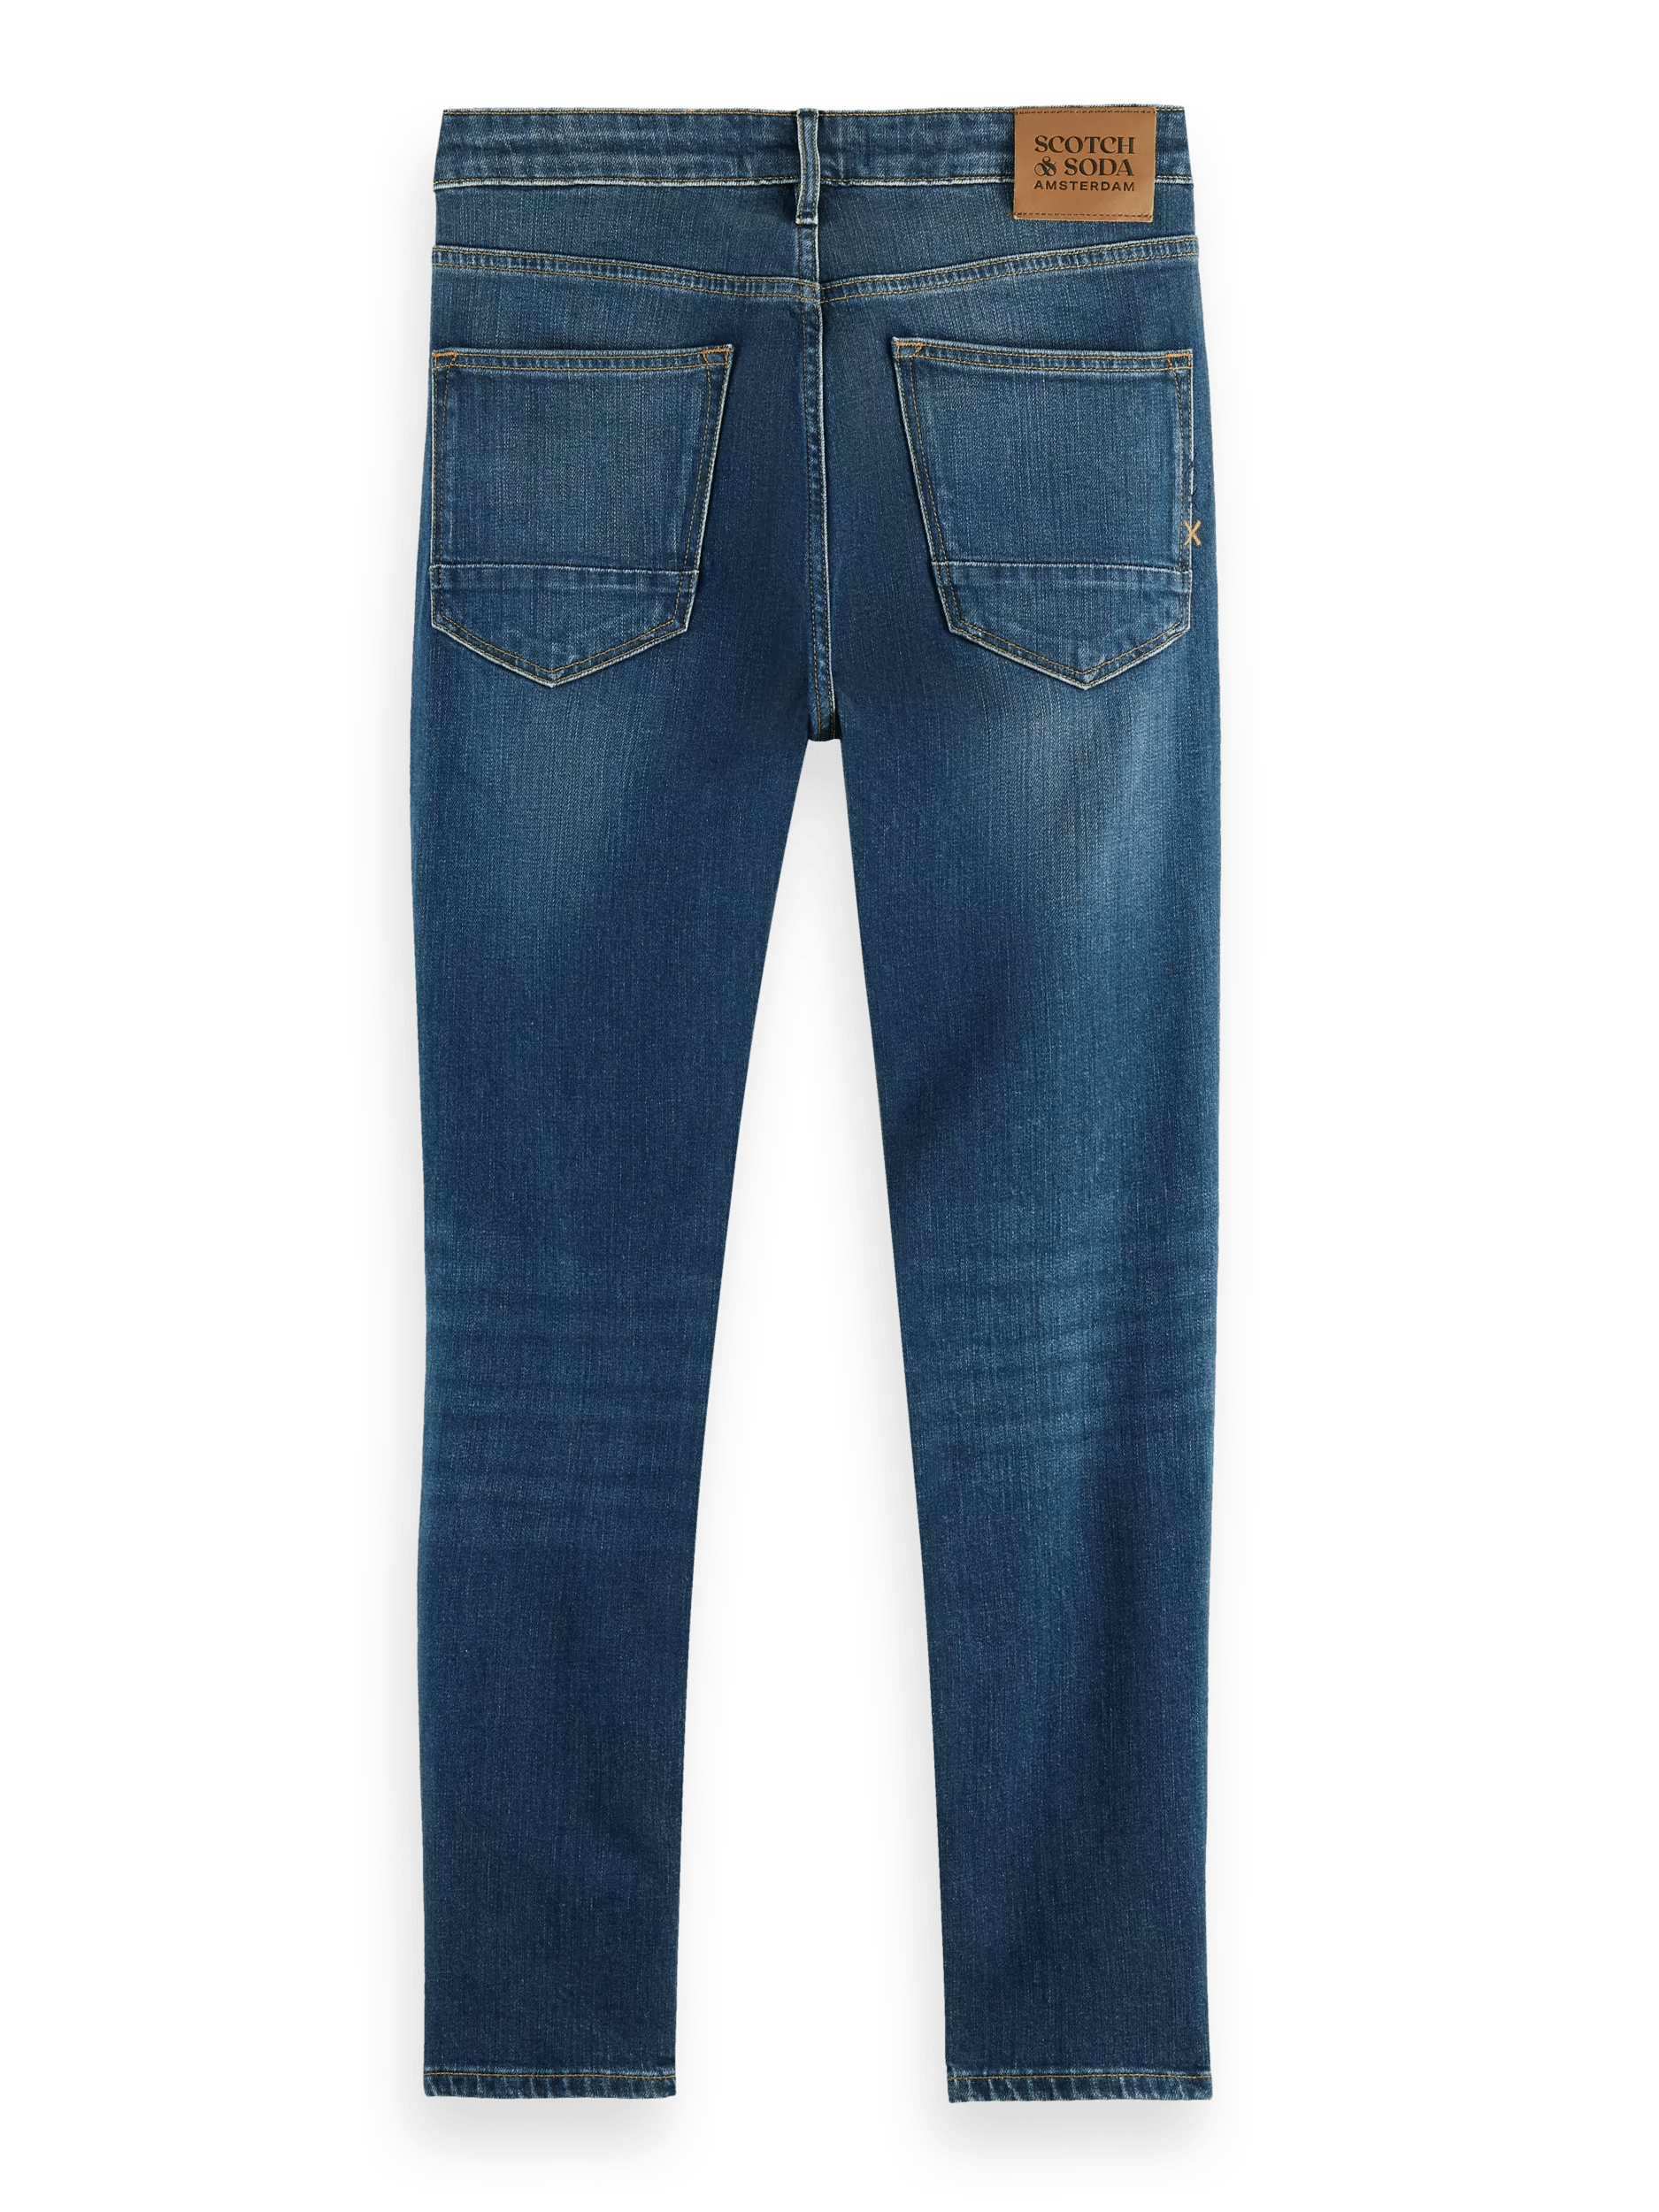 Scotch & Soda The Skim super-slim fit organic cotton jeans BCK